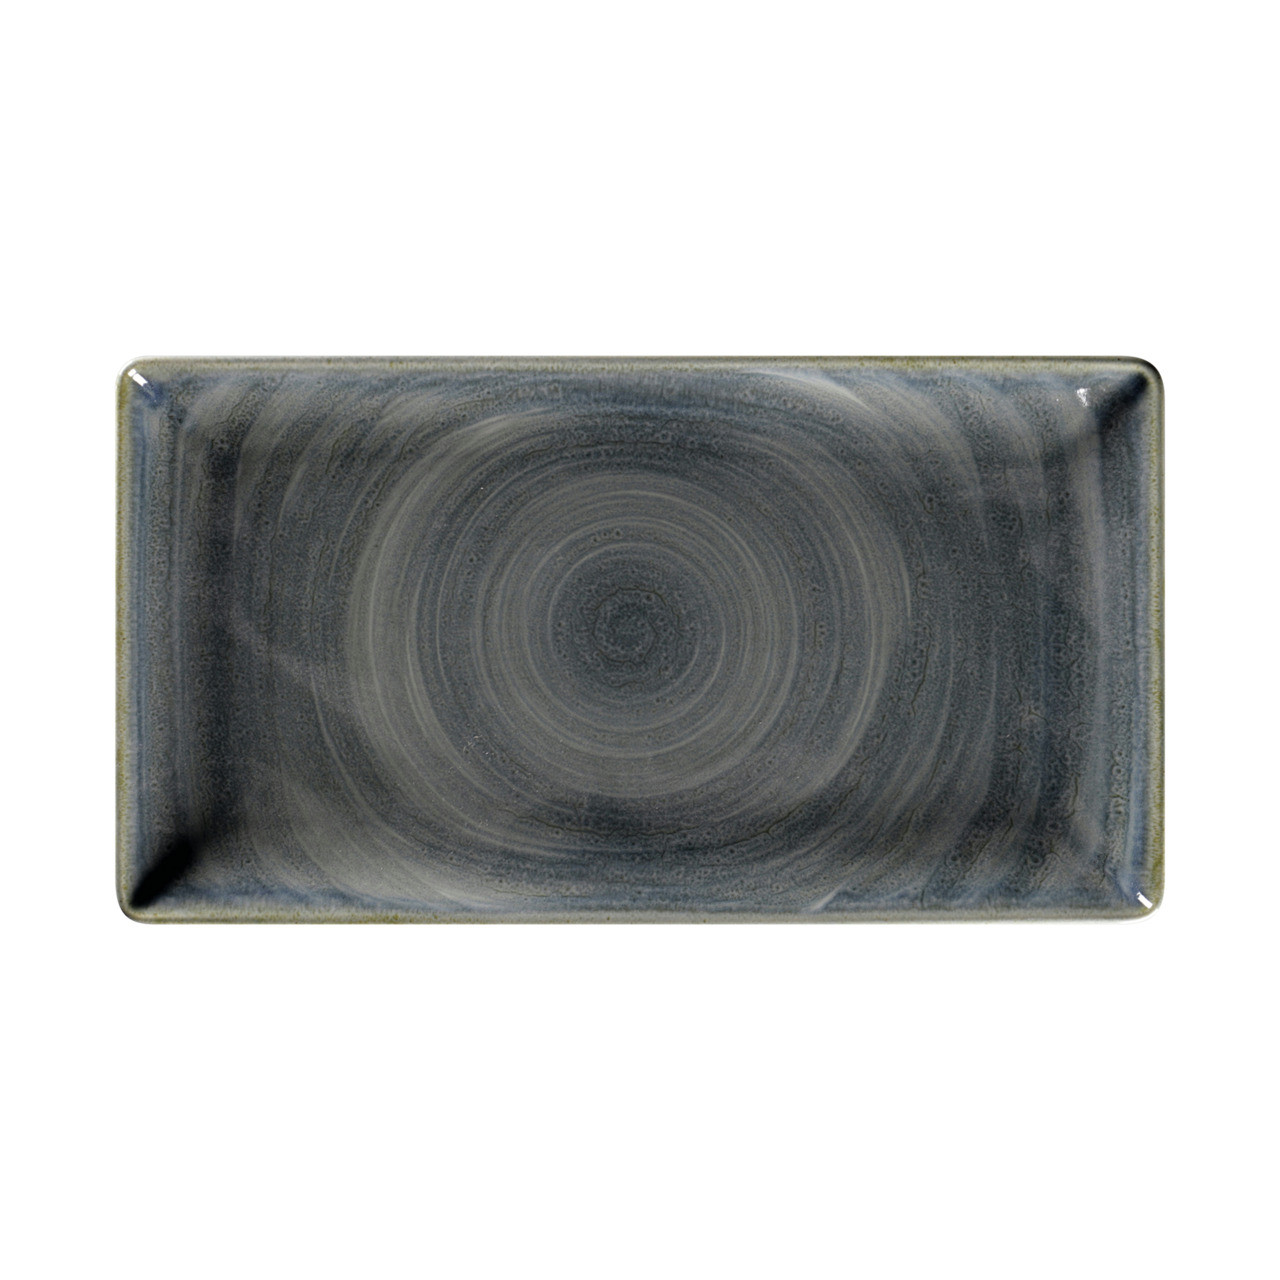 Spot, Teller rechteckig 338 x 183 mm jade blue